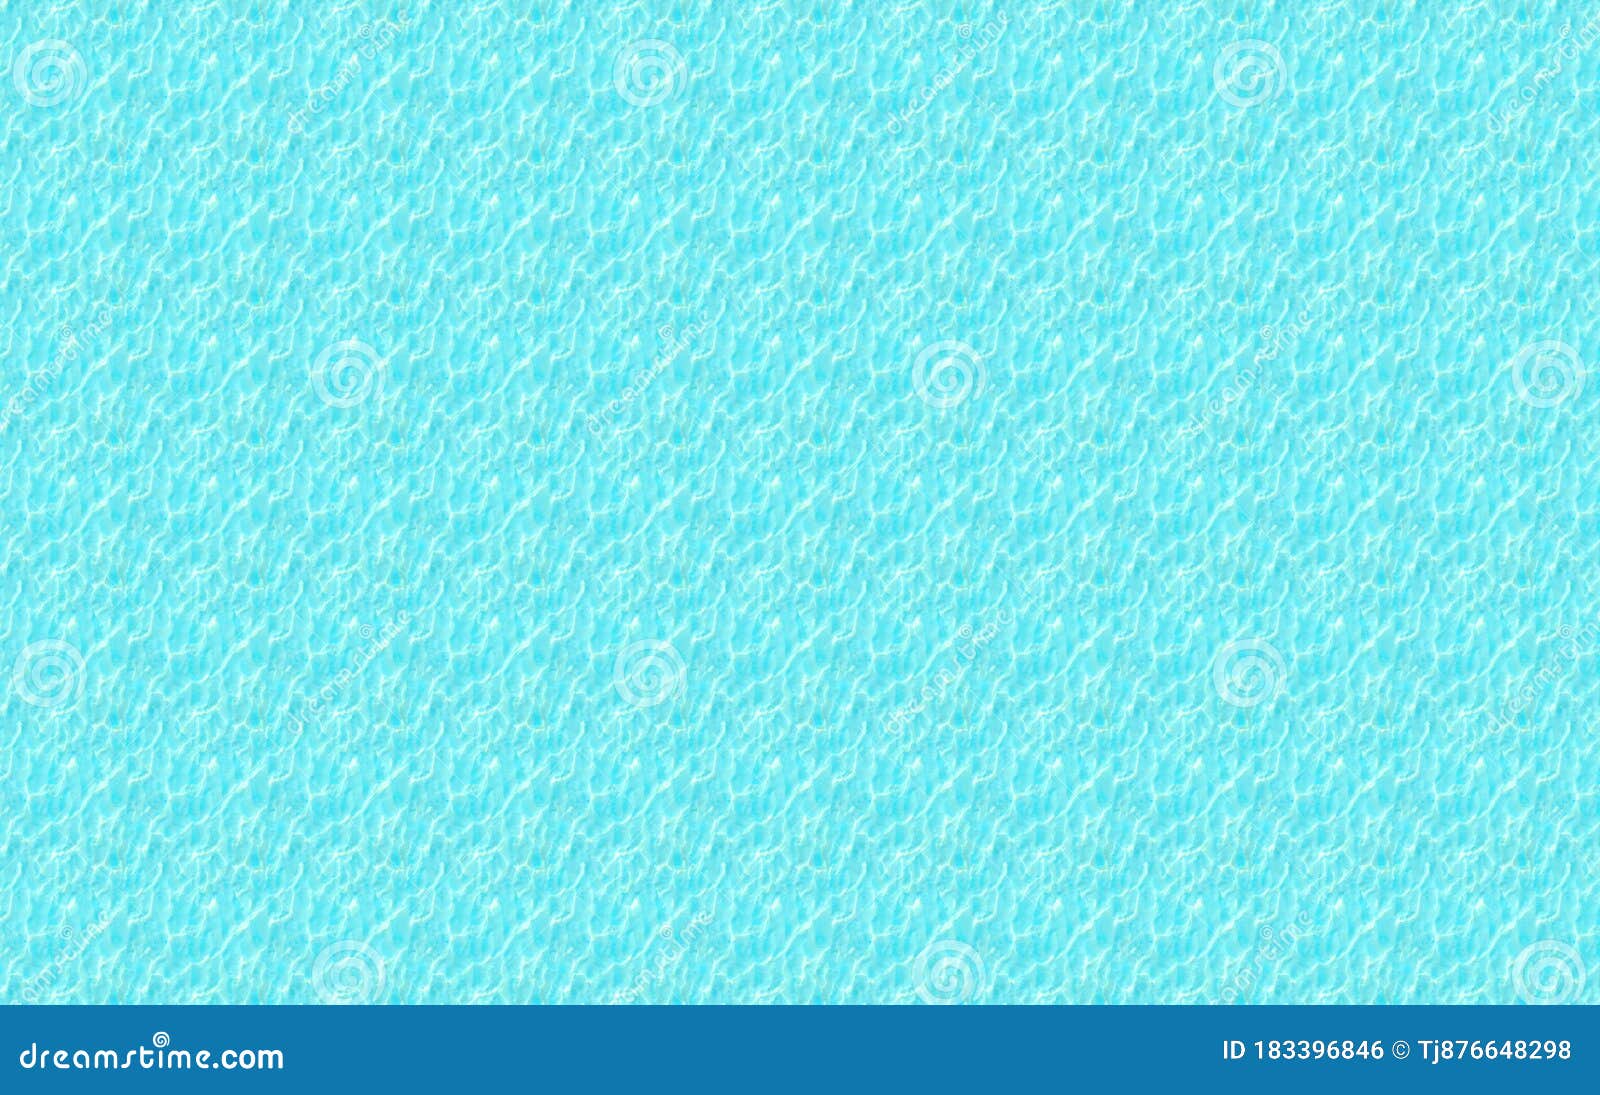 重复的波纹状图案带重复图形的浅蓝色壁纸背景库存例证 插画包括有带重复图形的浅蓝色壁纸背景 重复的波纹状图案